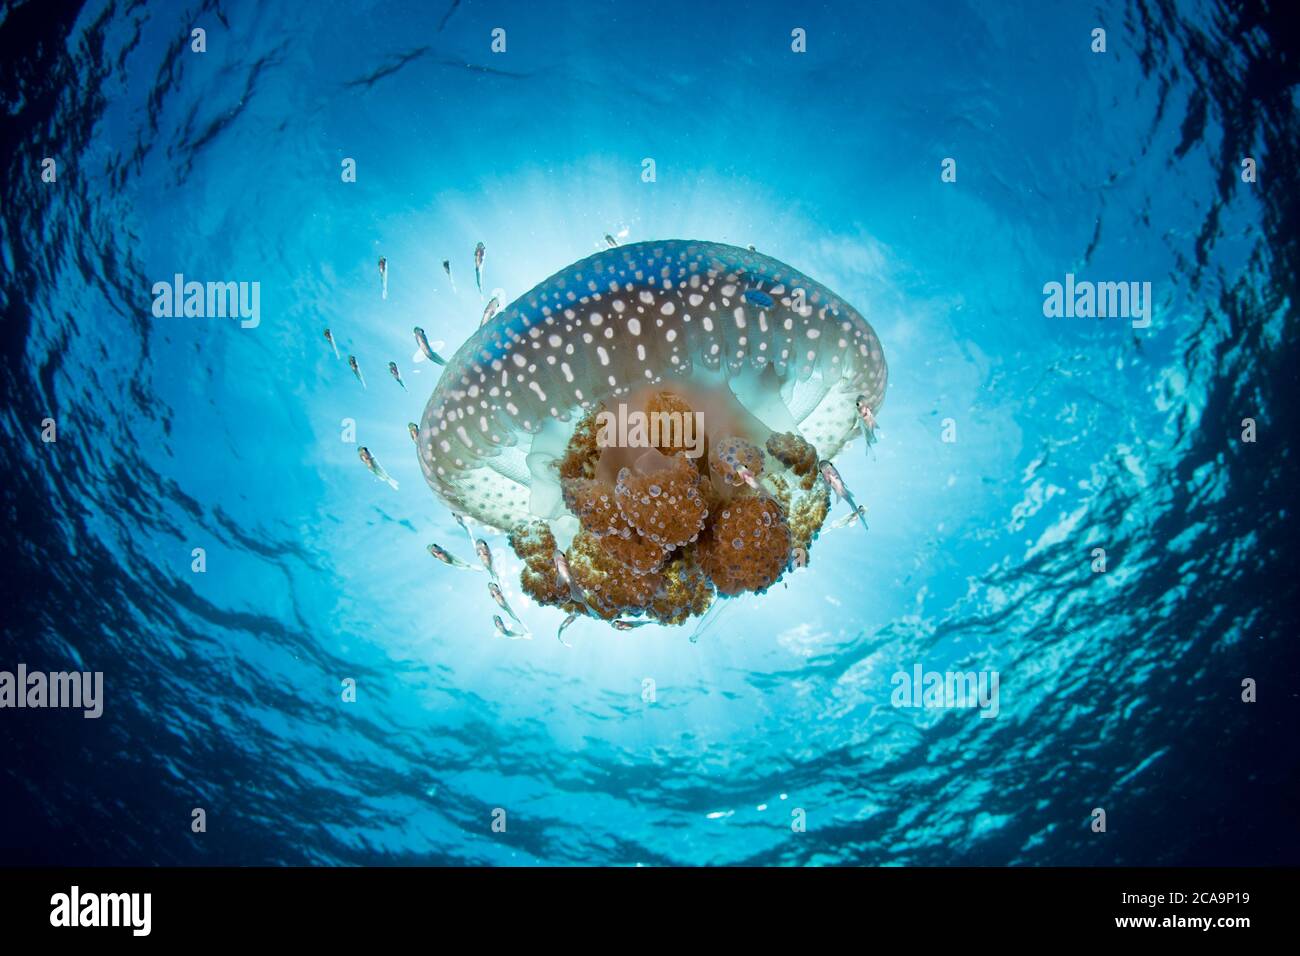 Una bella medusa si discosta attraverso acque limpide e blu in una forte corrente vicino all'isola di Alor, Indonesia. Quest'area ha un'elevata biodiversità marina. Foto Stock